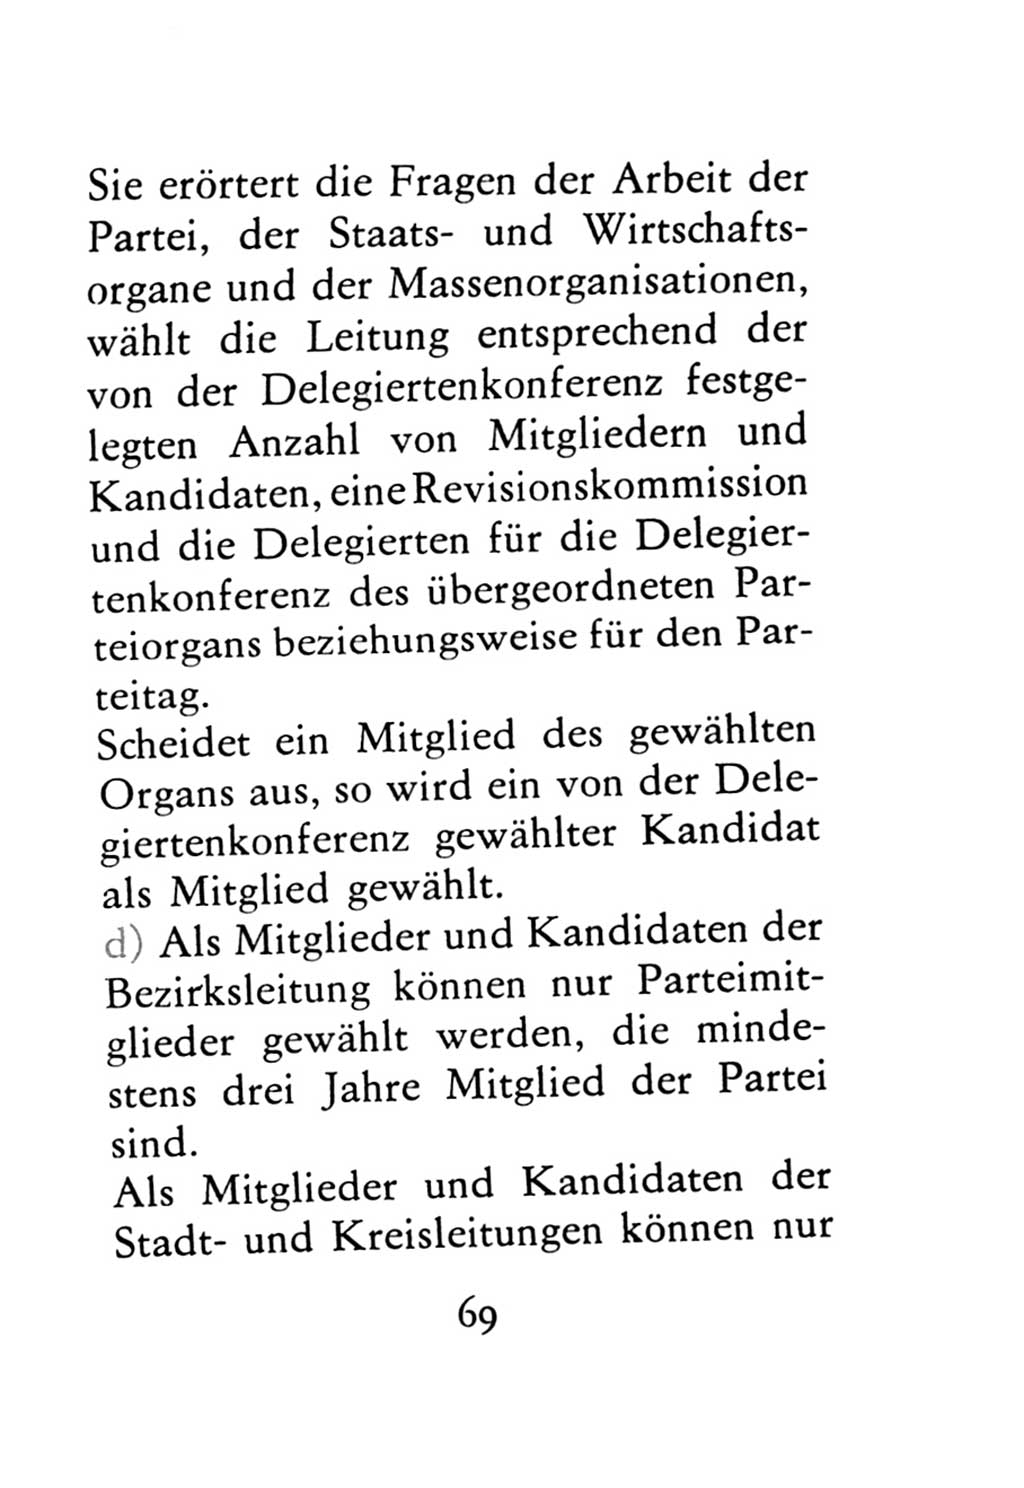 Statut der Sozialistischen Einheitspartei Deutschlands (SED) 1971, Seite 69 (St. SED DDR 1971, S. 69)